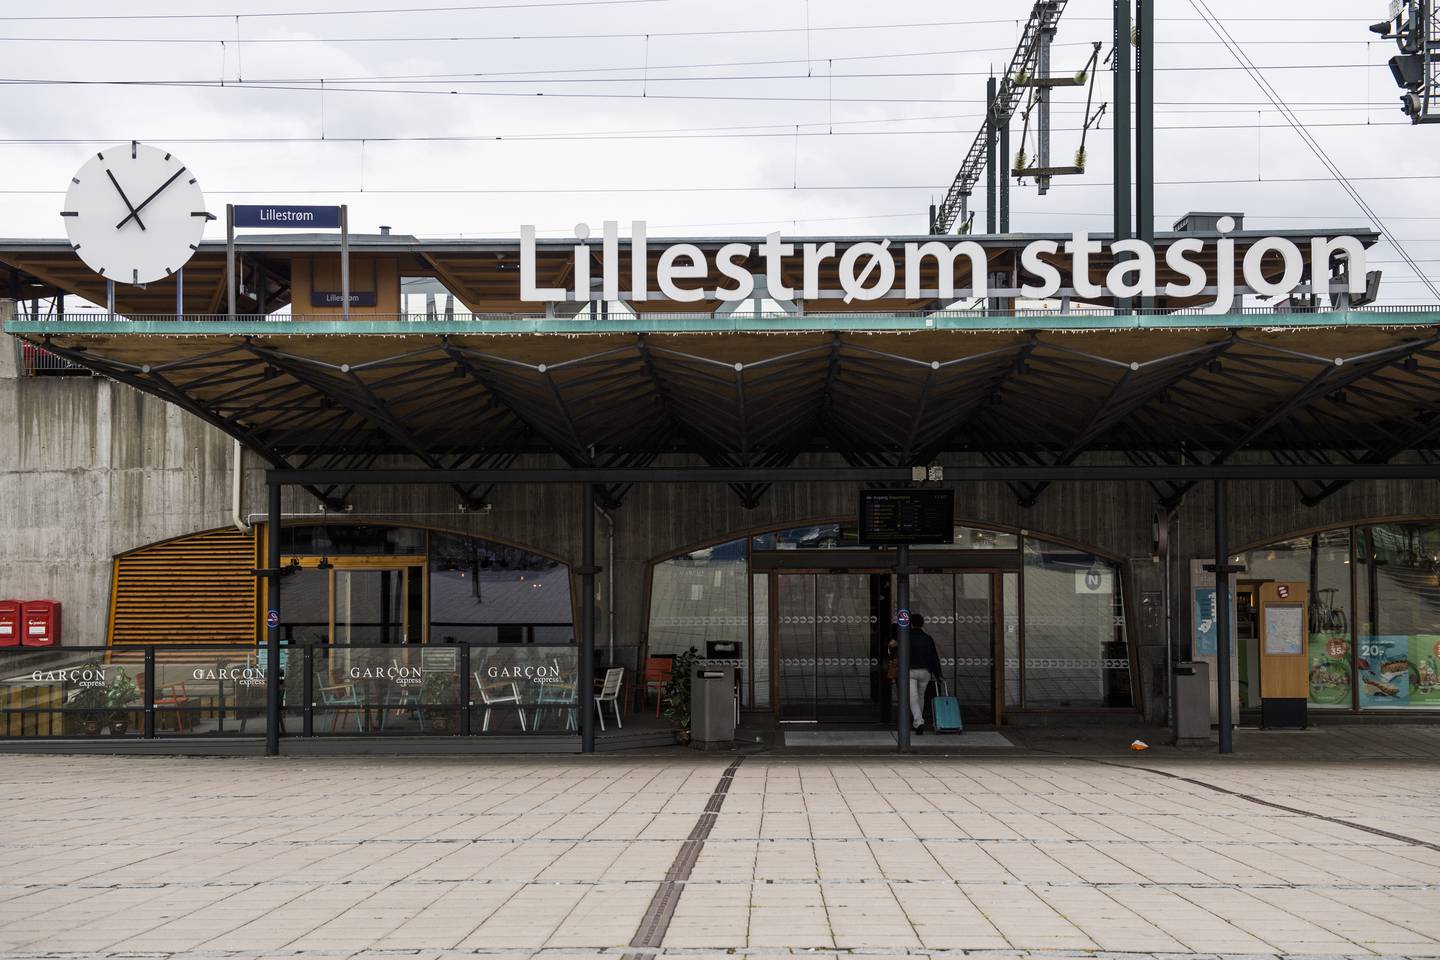 Stasjonsbyen Lillestrøm ligger en kort togtur fra Oslo. Her treffer nasjonal misnøye med regjeringen hardere enn andre steder, tror Jørgen Vik.